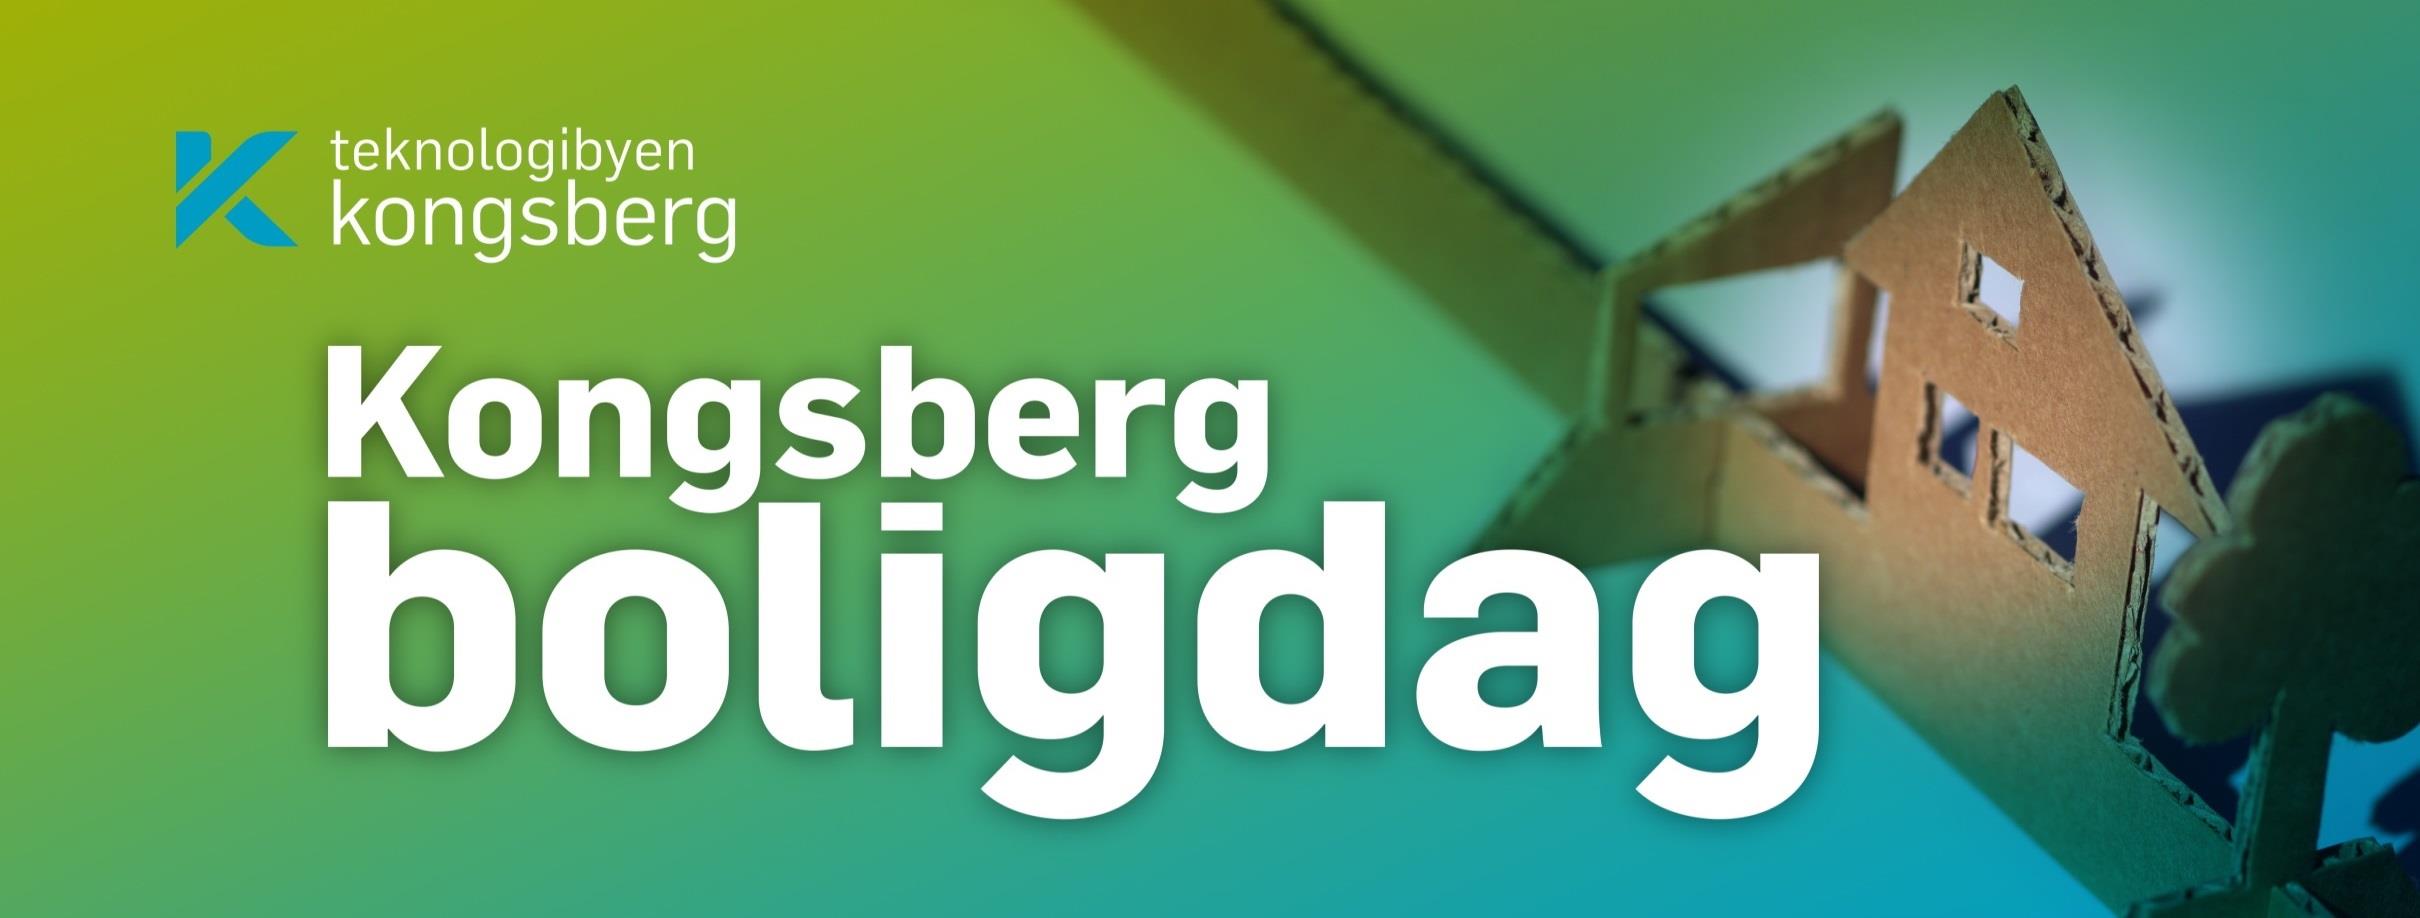 Helhetlig Boligplan for Kongsberg kommune 2014-2018 SAMARBEID MELLOM: UTBYGGERE - HUSBYGGERE EIENDOMSMEGLERE BANKER - ANDRE FINANSINSTITUSJONER - KONGSBERG NÆRINGSFORUM/NÆRINGSLIVET OG